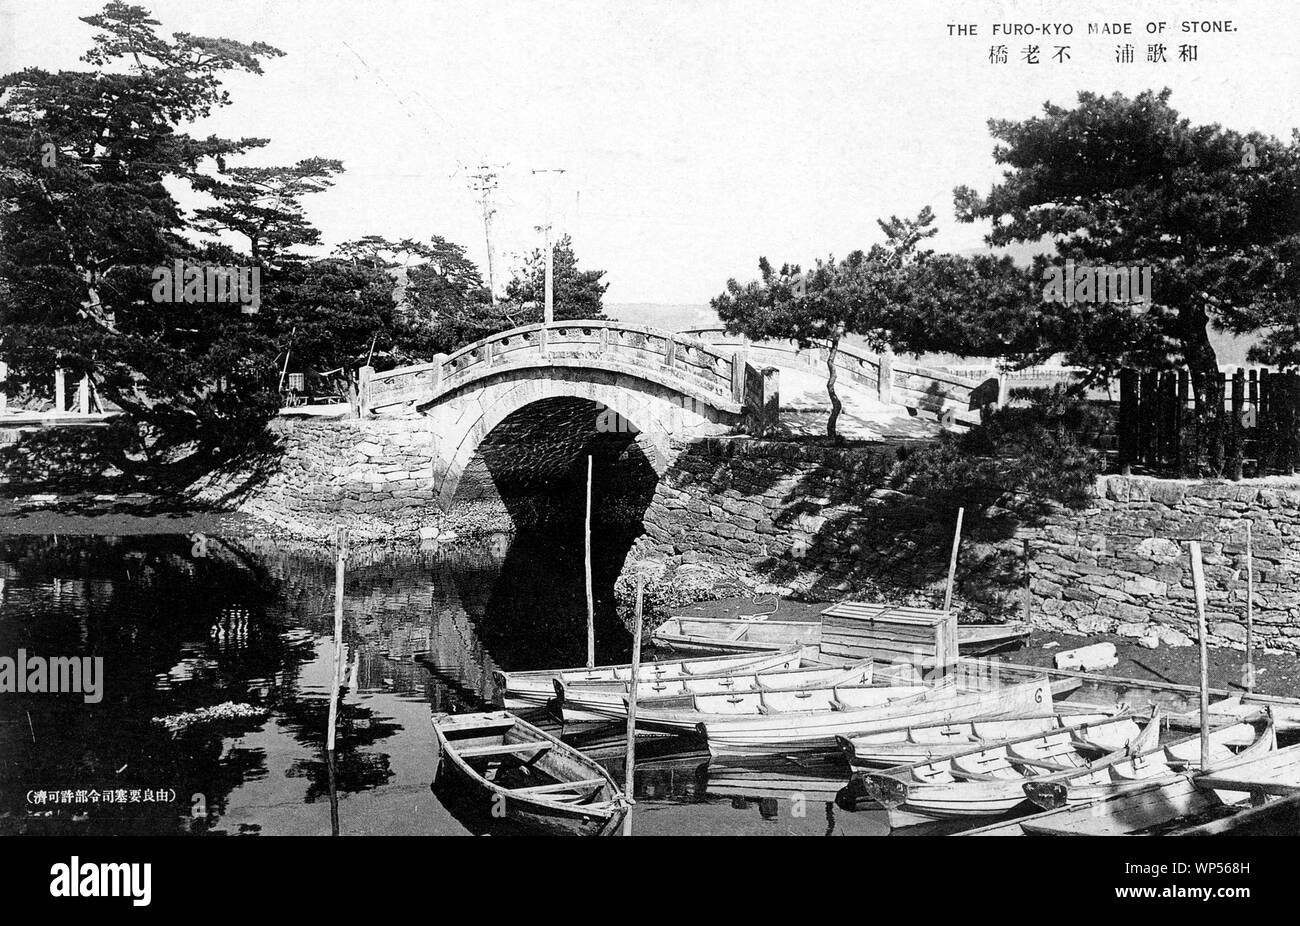 [ 1920 Japón - Puente de Piedra japonesa ] - Puente de Piedra Furokyo Wakanoura en Wakayama. El puente fue terminado en 1851 Kaei (4). El arco parte de los pilares, se cree que han sido construidas por albañiles de Higo Kumamoto, mientras la baranda, con un patrón de alivio de las nubes , se cree para ser el trabajo de Ishiya Chubei albañiles de Yuasa. Wakanoura es famoso por su belleza escénica y tideland, en la desembocadura del río Wakagawa tideland, la más grande en la zona de Kansai. Vintage del siglo xx postal. Foto de stock